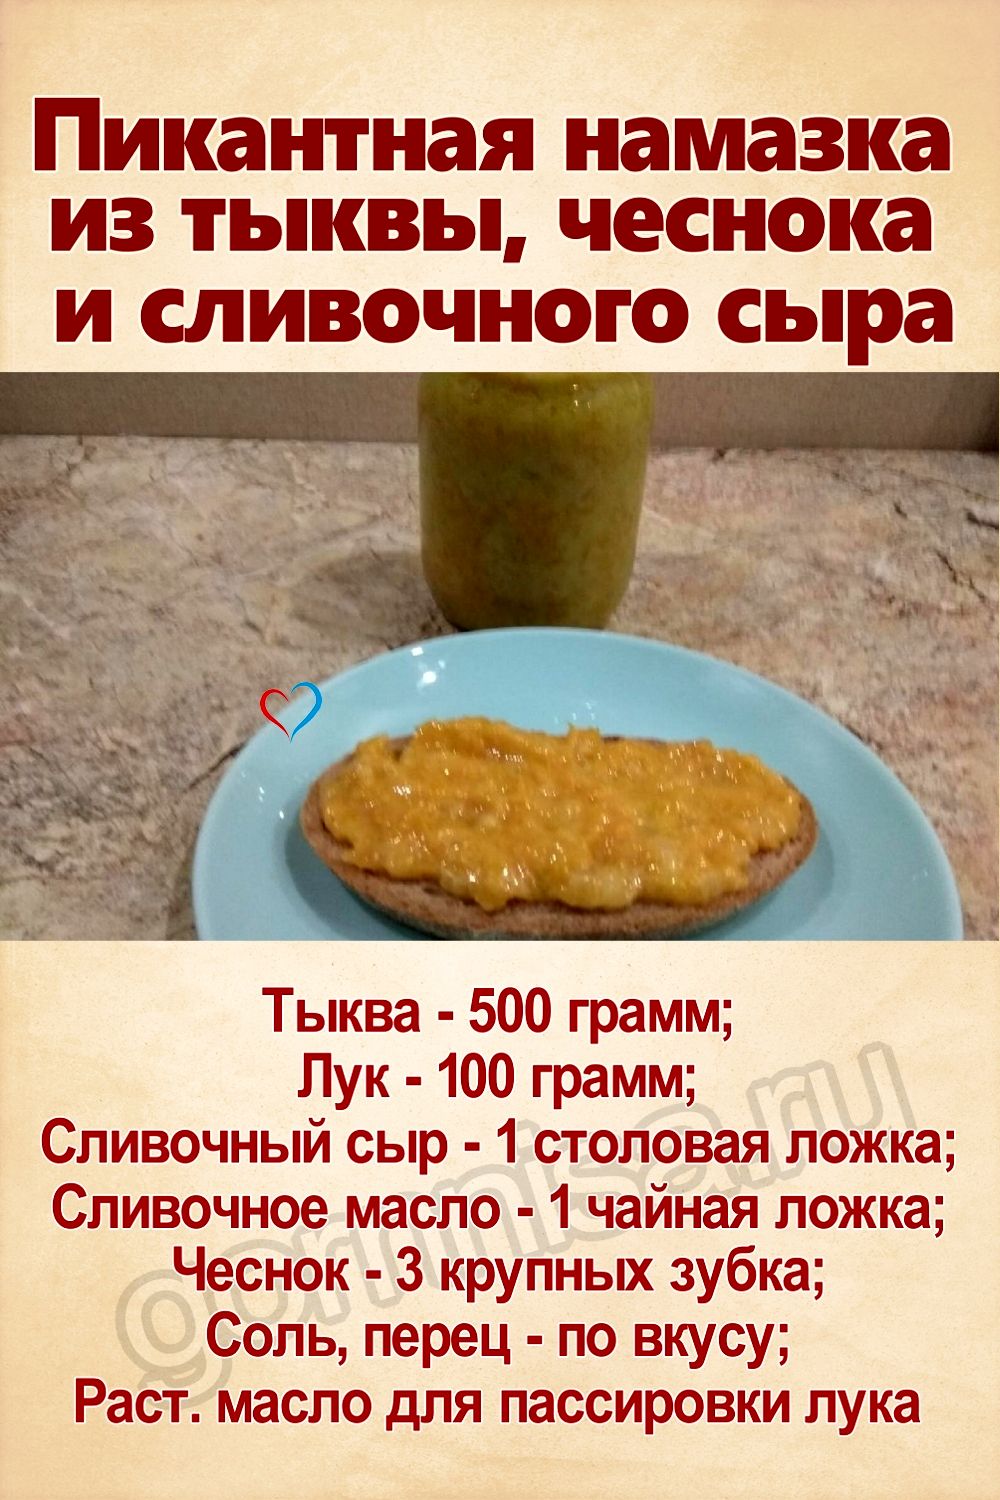 Рецепт недели - Пикантная намазка из тыквы, чеснока и сливочного сыра